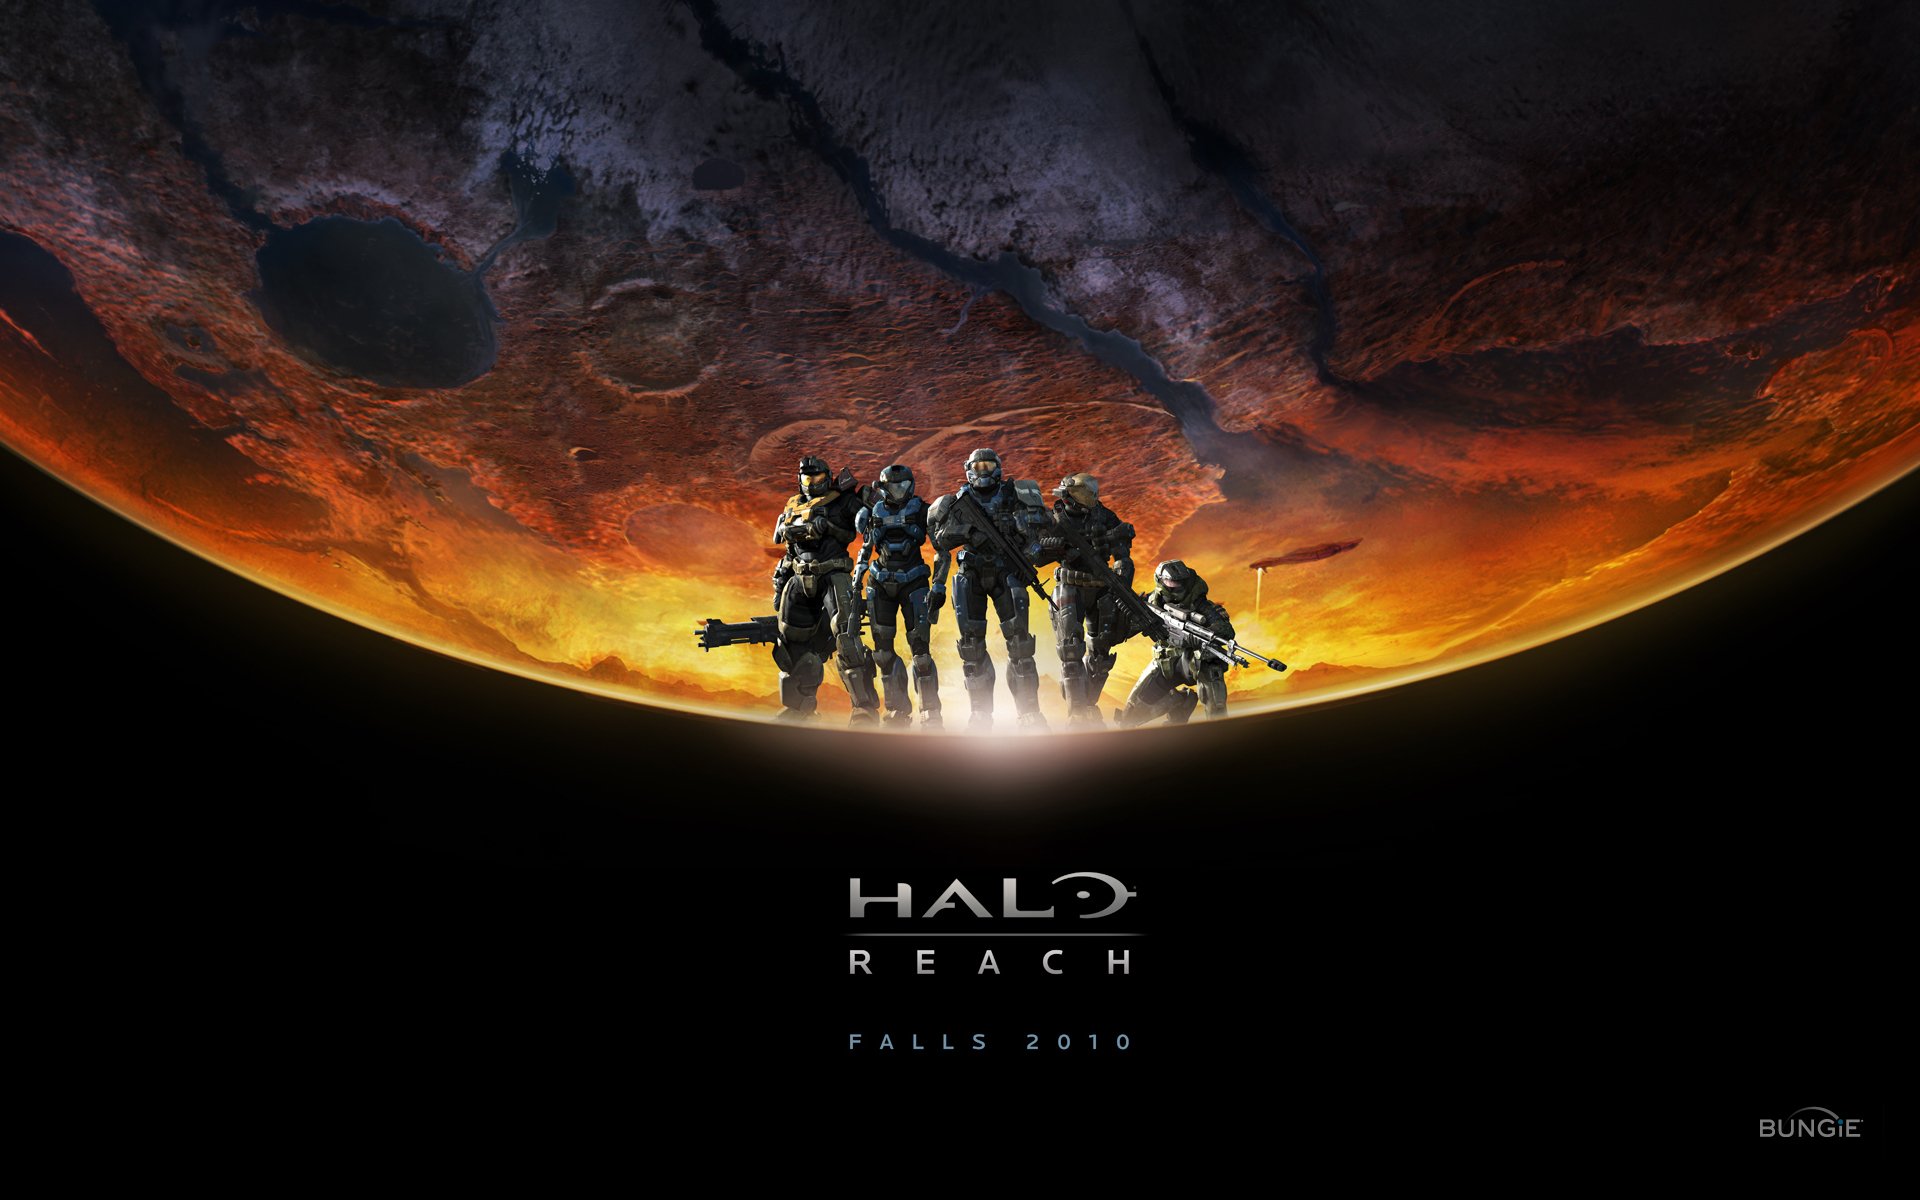 Video Game Halo Reach Wallpaper: Với những chiến binh và chiến mẫu độc đáo, Halo Reach là một trong những game hành động đỉnh cao nhất. Nếu bạn là fan hâm mộ của Halo reach, hình nền độc quyền này sẽ làm lòng bạn xao xuyến và vô cùng thích thú. Chiêm ngưỡng những trận chiến đầy kịch tính, những chiến binh mạnh mẽ và không gian đẹp như cổ tích trong Halo Reach.